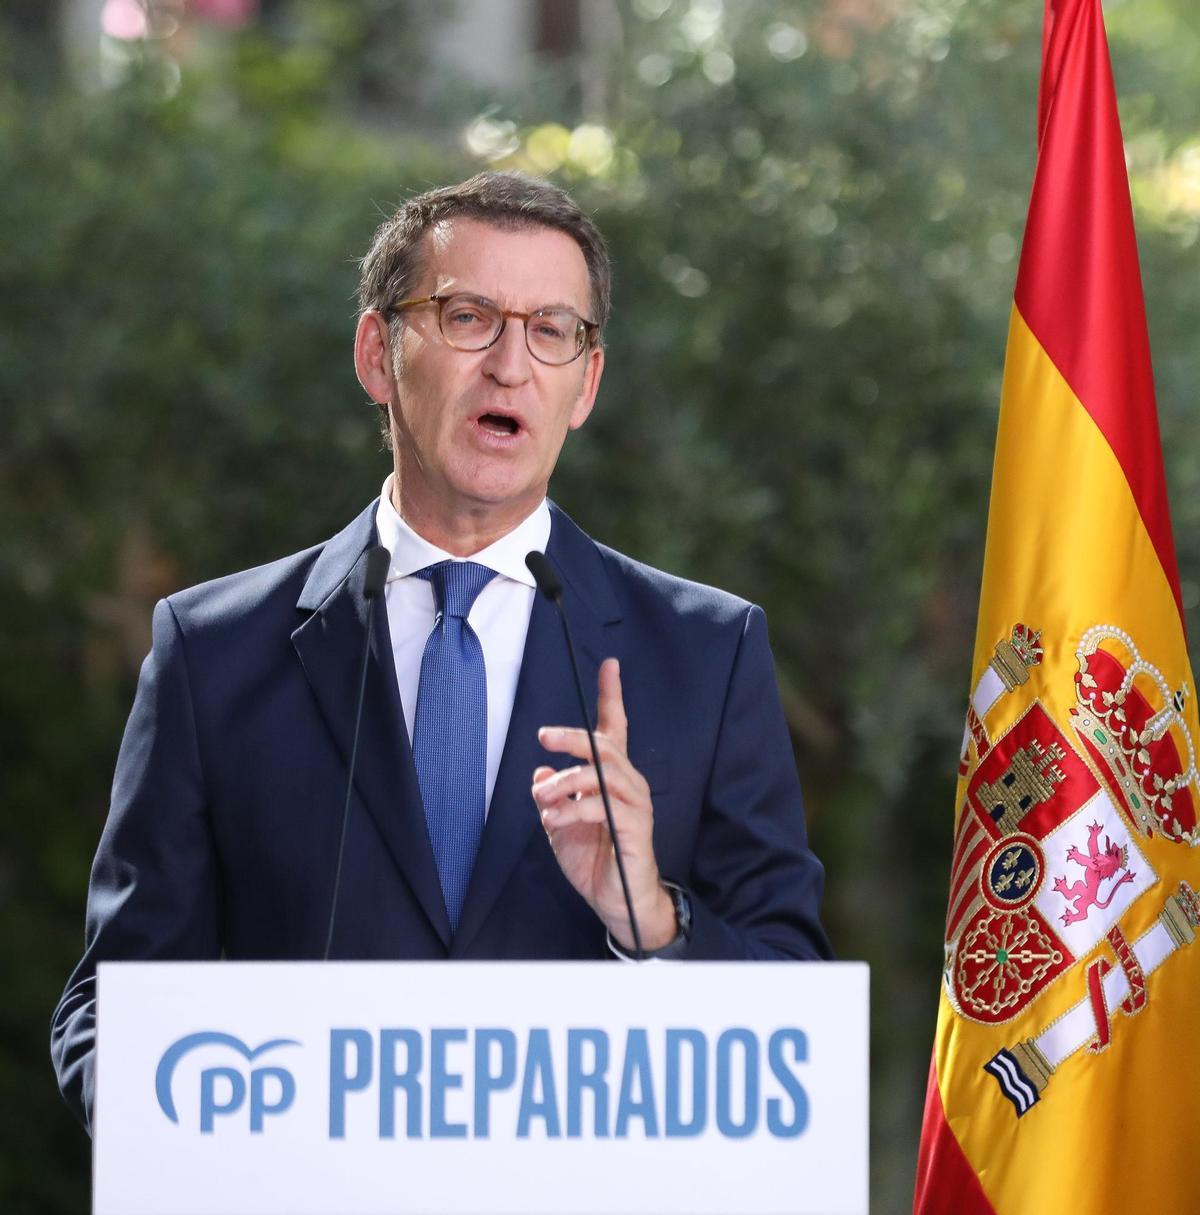 Feijóo utilitzarà la deflactació de l’IRPF a Euskadi per forçar una rectificació del Govern